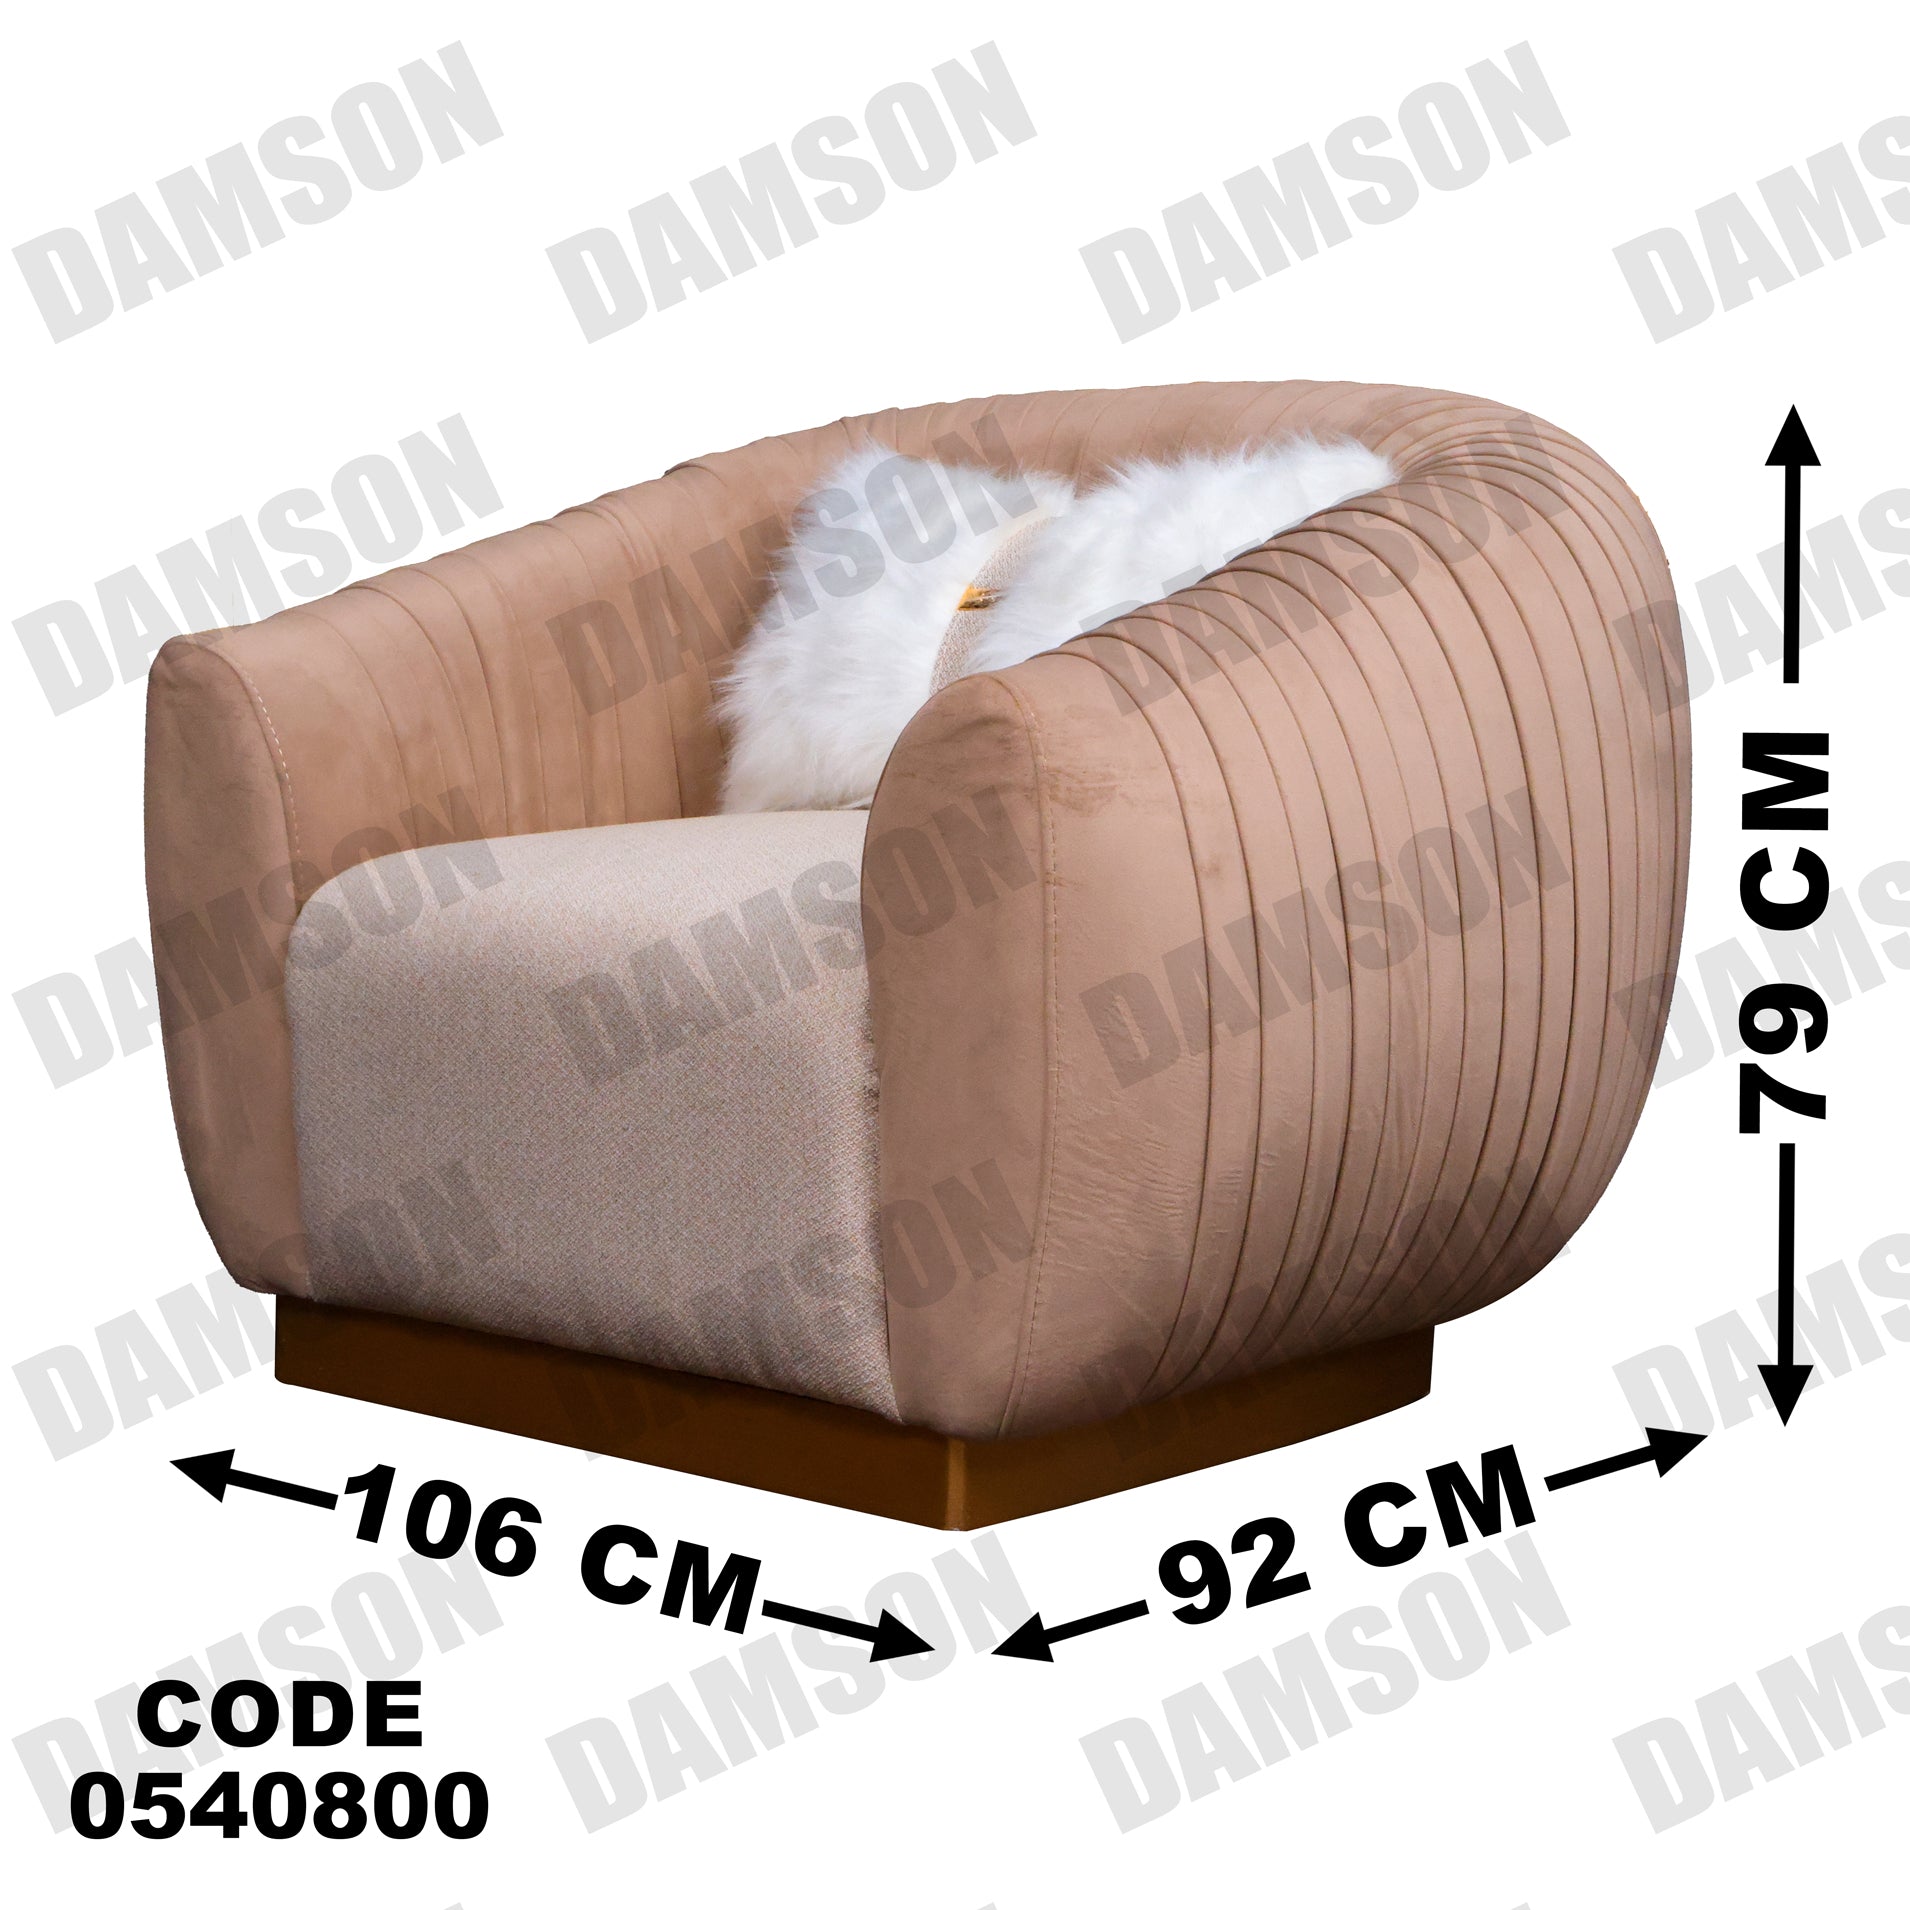 انترية 408 - Damson Furnitureانترية 408